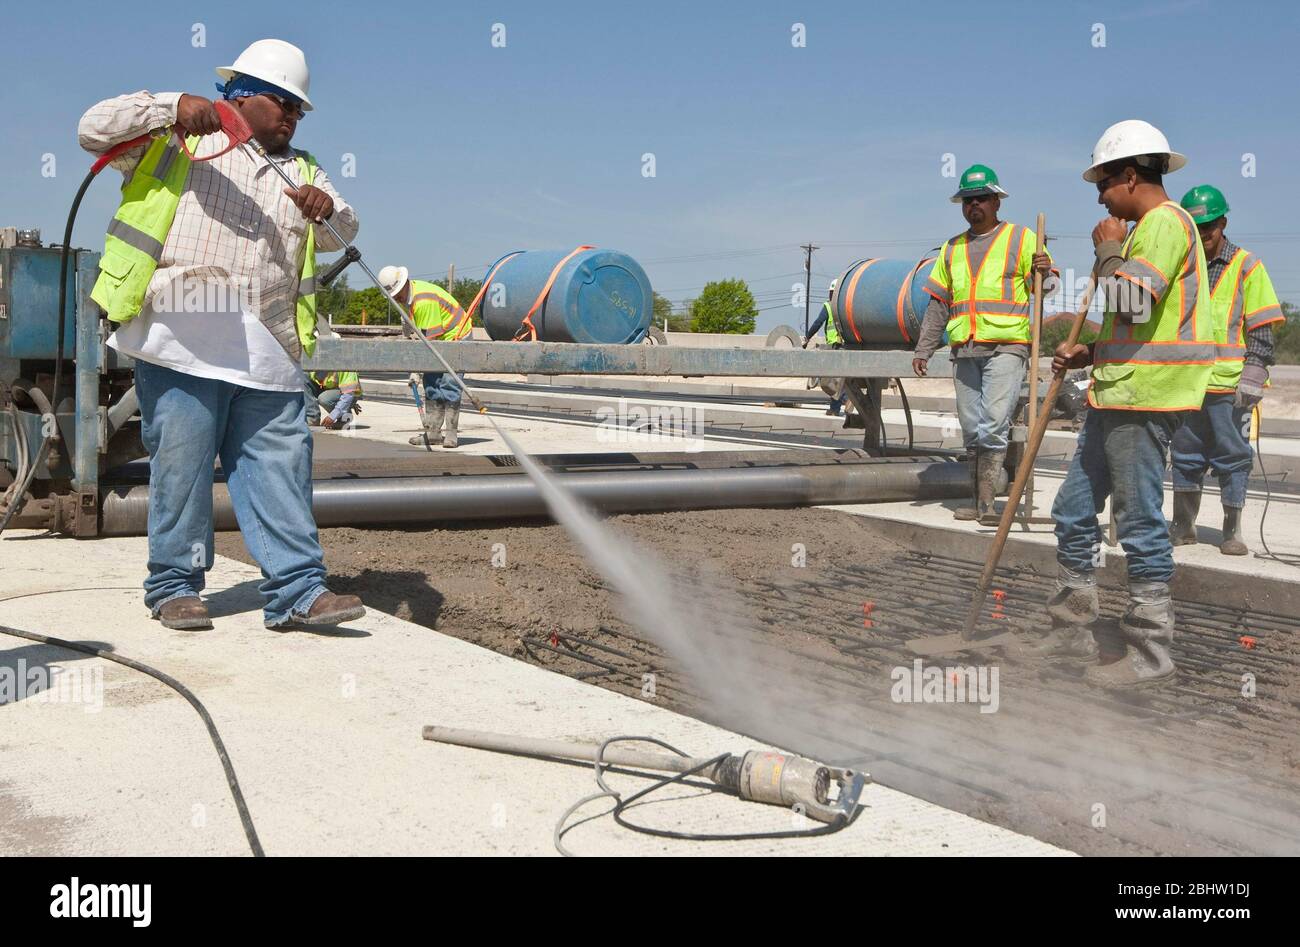 Austin Texas Etats-Unis, 6 avril 2011: Le travailleur pulvérise de l'eau pour assurer la bonne température du béton fraîchement coulé le long de la route en construction. ©Marjorie Kamys Cotera/Daemmrich photos Banque D'Images